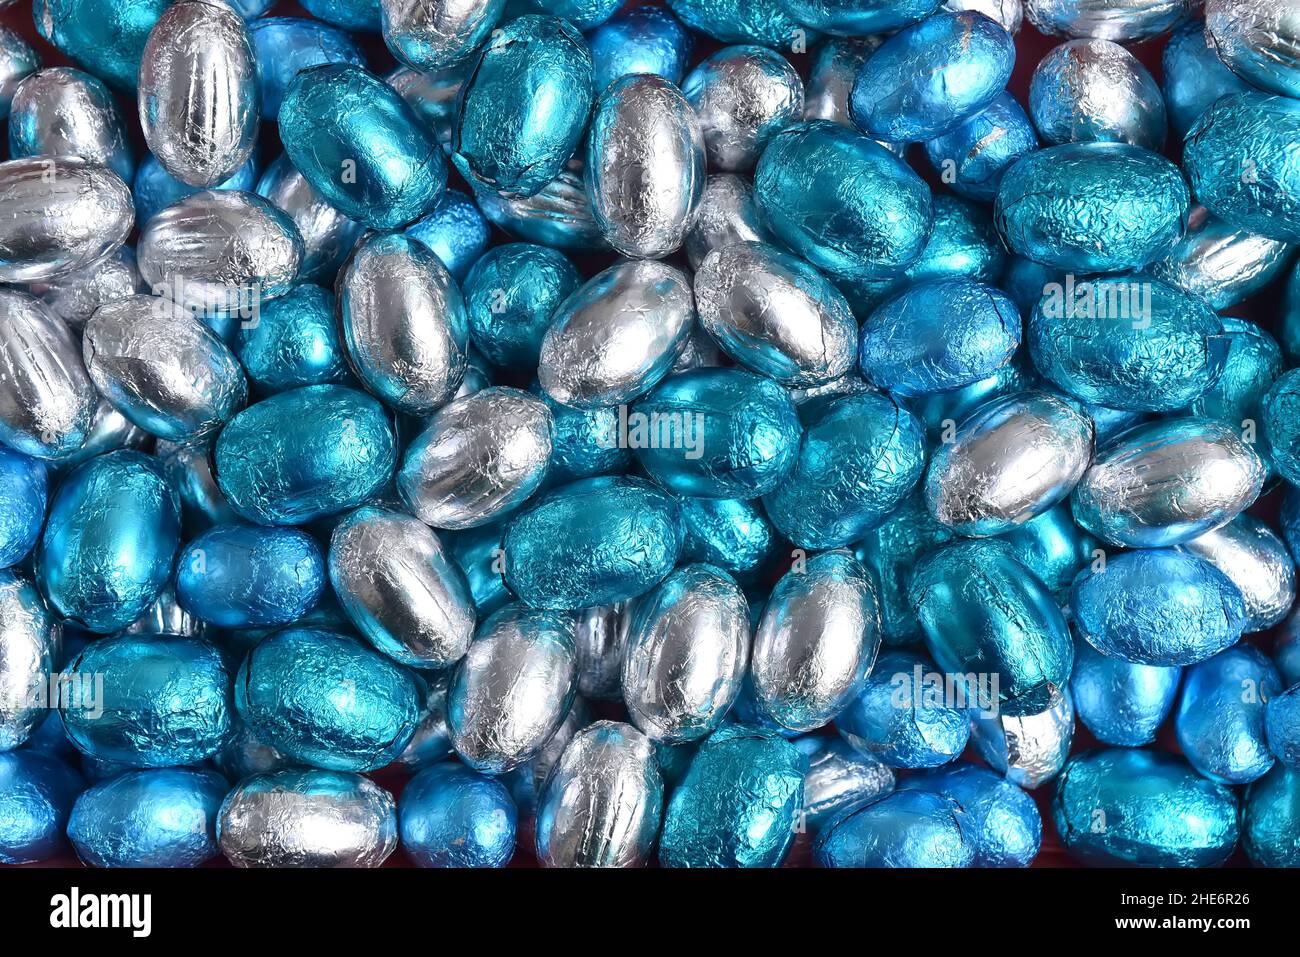 Blaue, silberne und türkisfarbene Schokoladen-ostereier in Folienverpackung vor schwarzem Hintergrund. Stockfoto